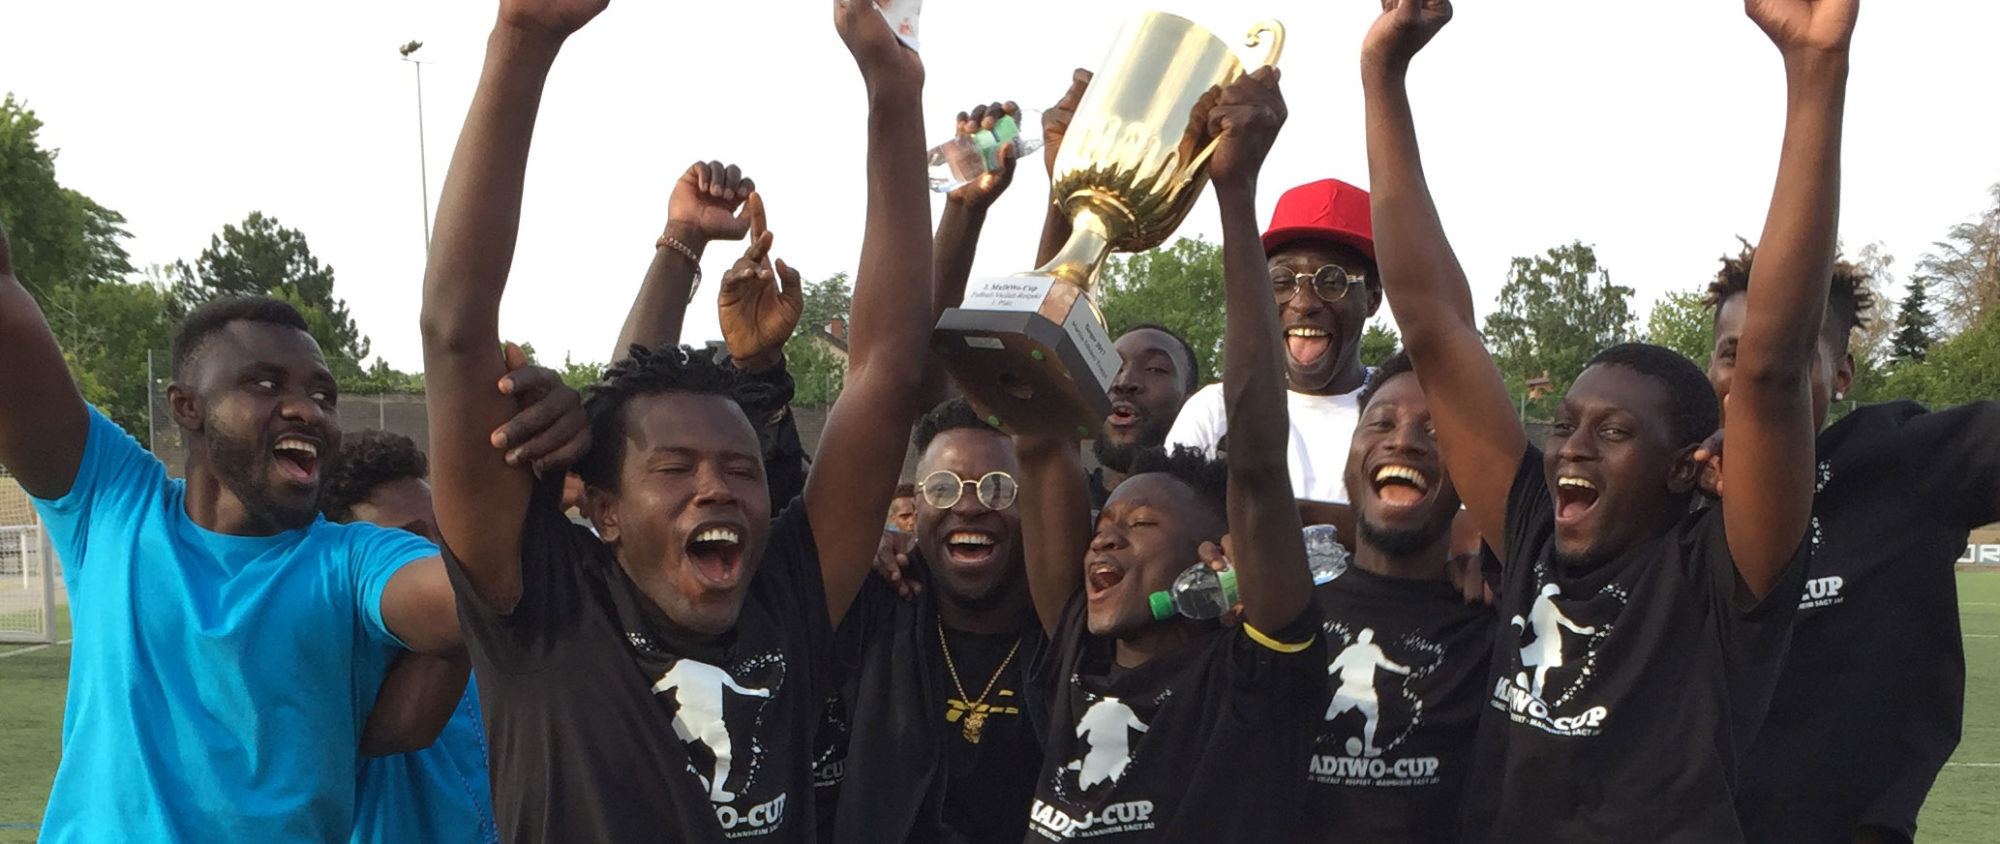 Das Gewinnerteam MaDiWo Cup 2019